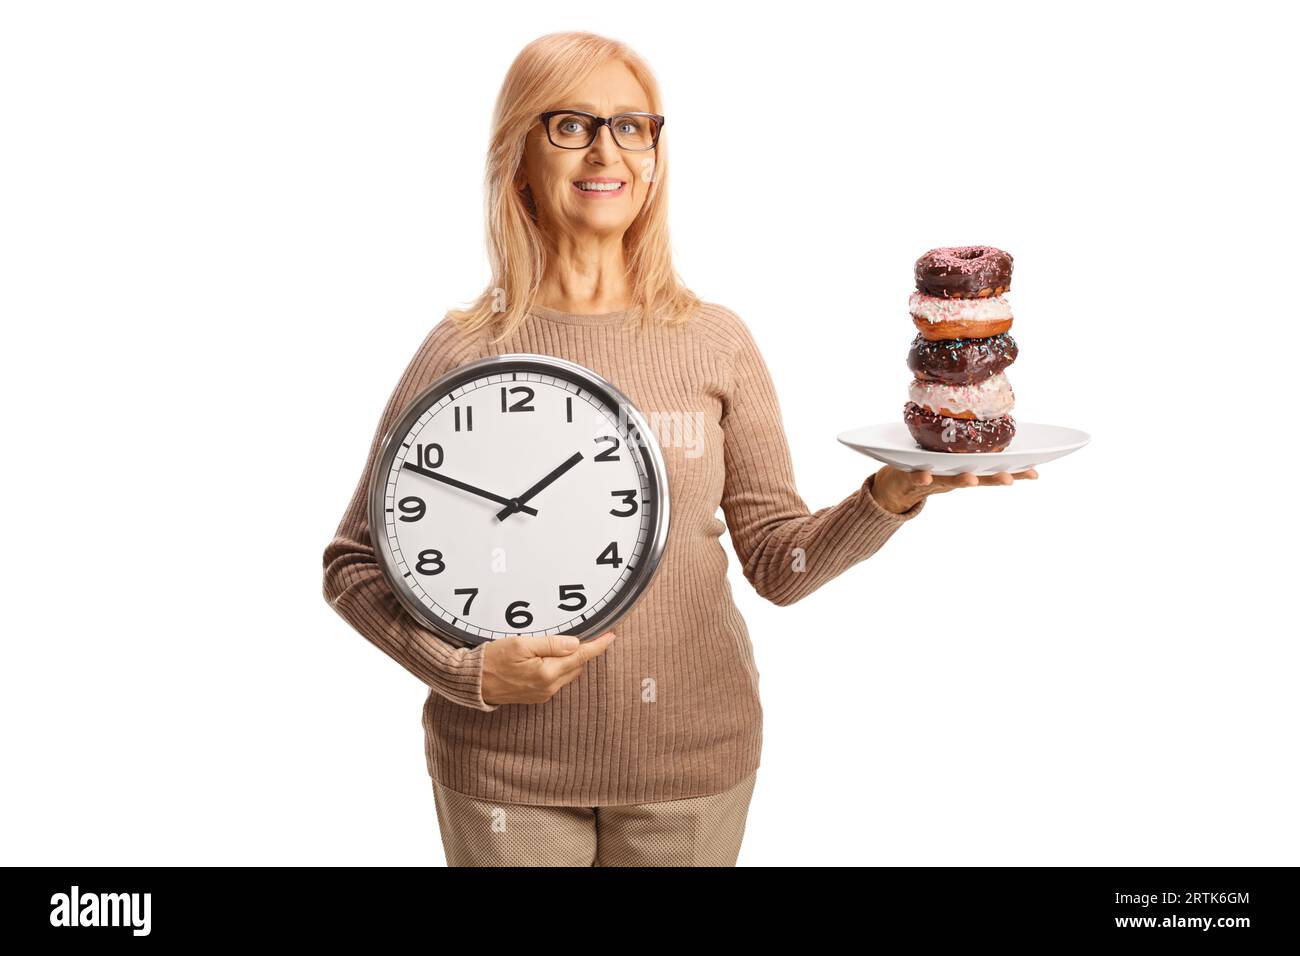 Reife Frau, die Donuts auf einem Teller und eine Uhr auf weißem Hintergrund hält Stockfoto